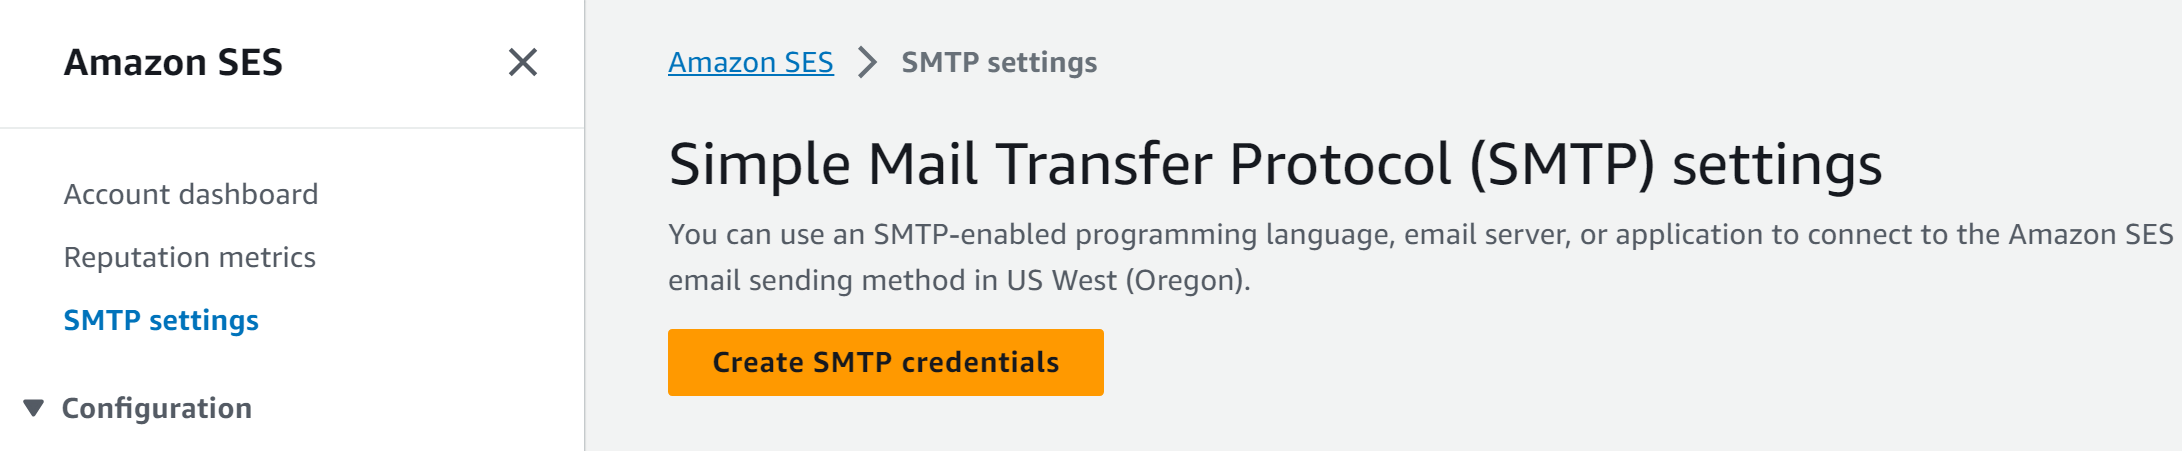 Create SMTP credentials